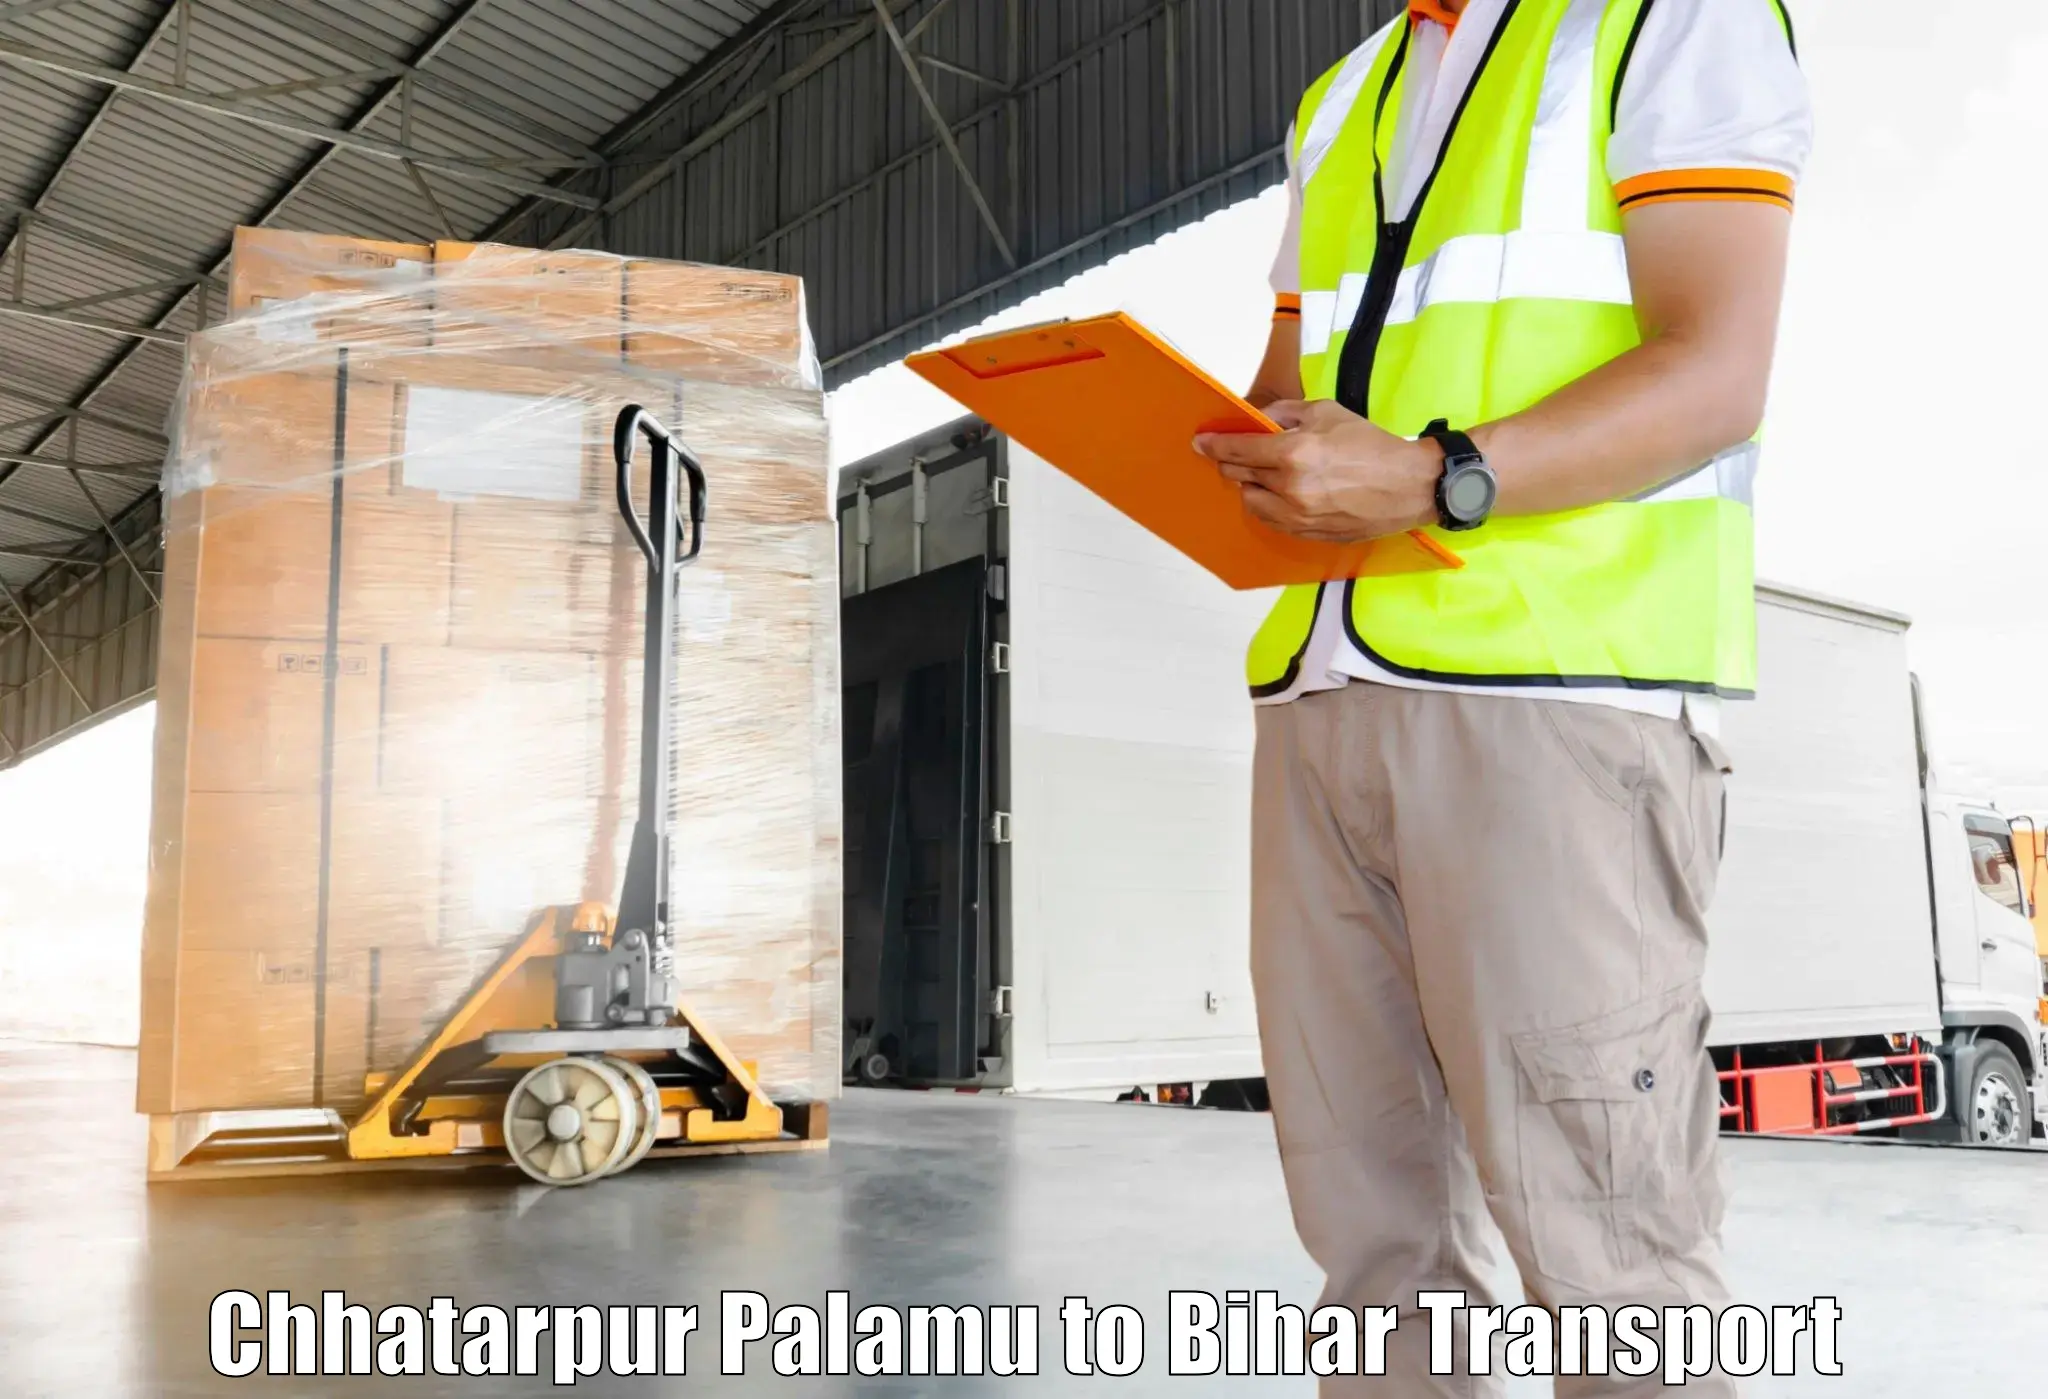 Transport shared services Chhatarpur Palamu to Tekari